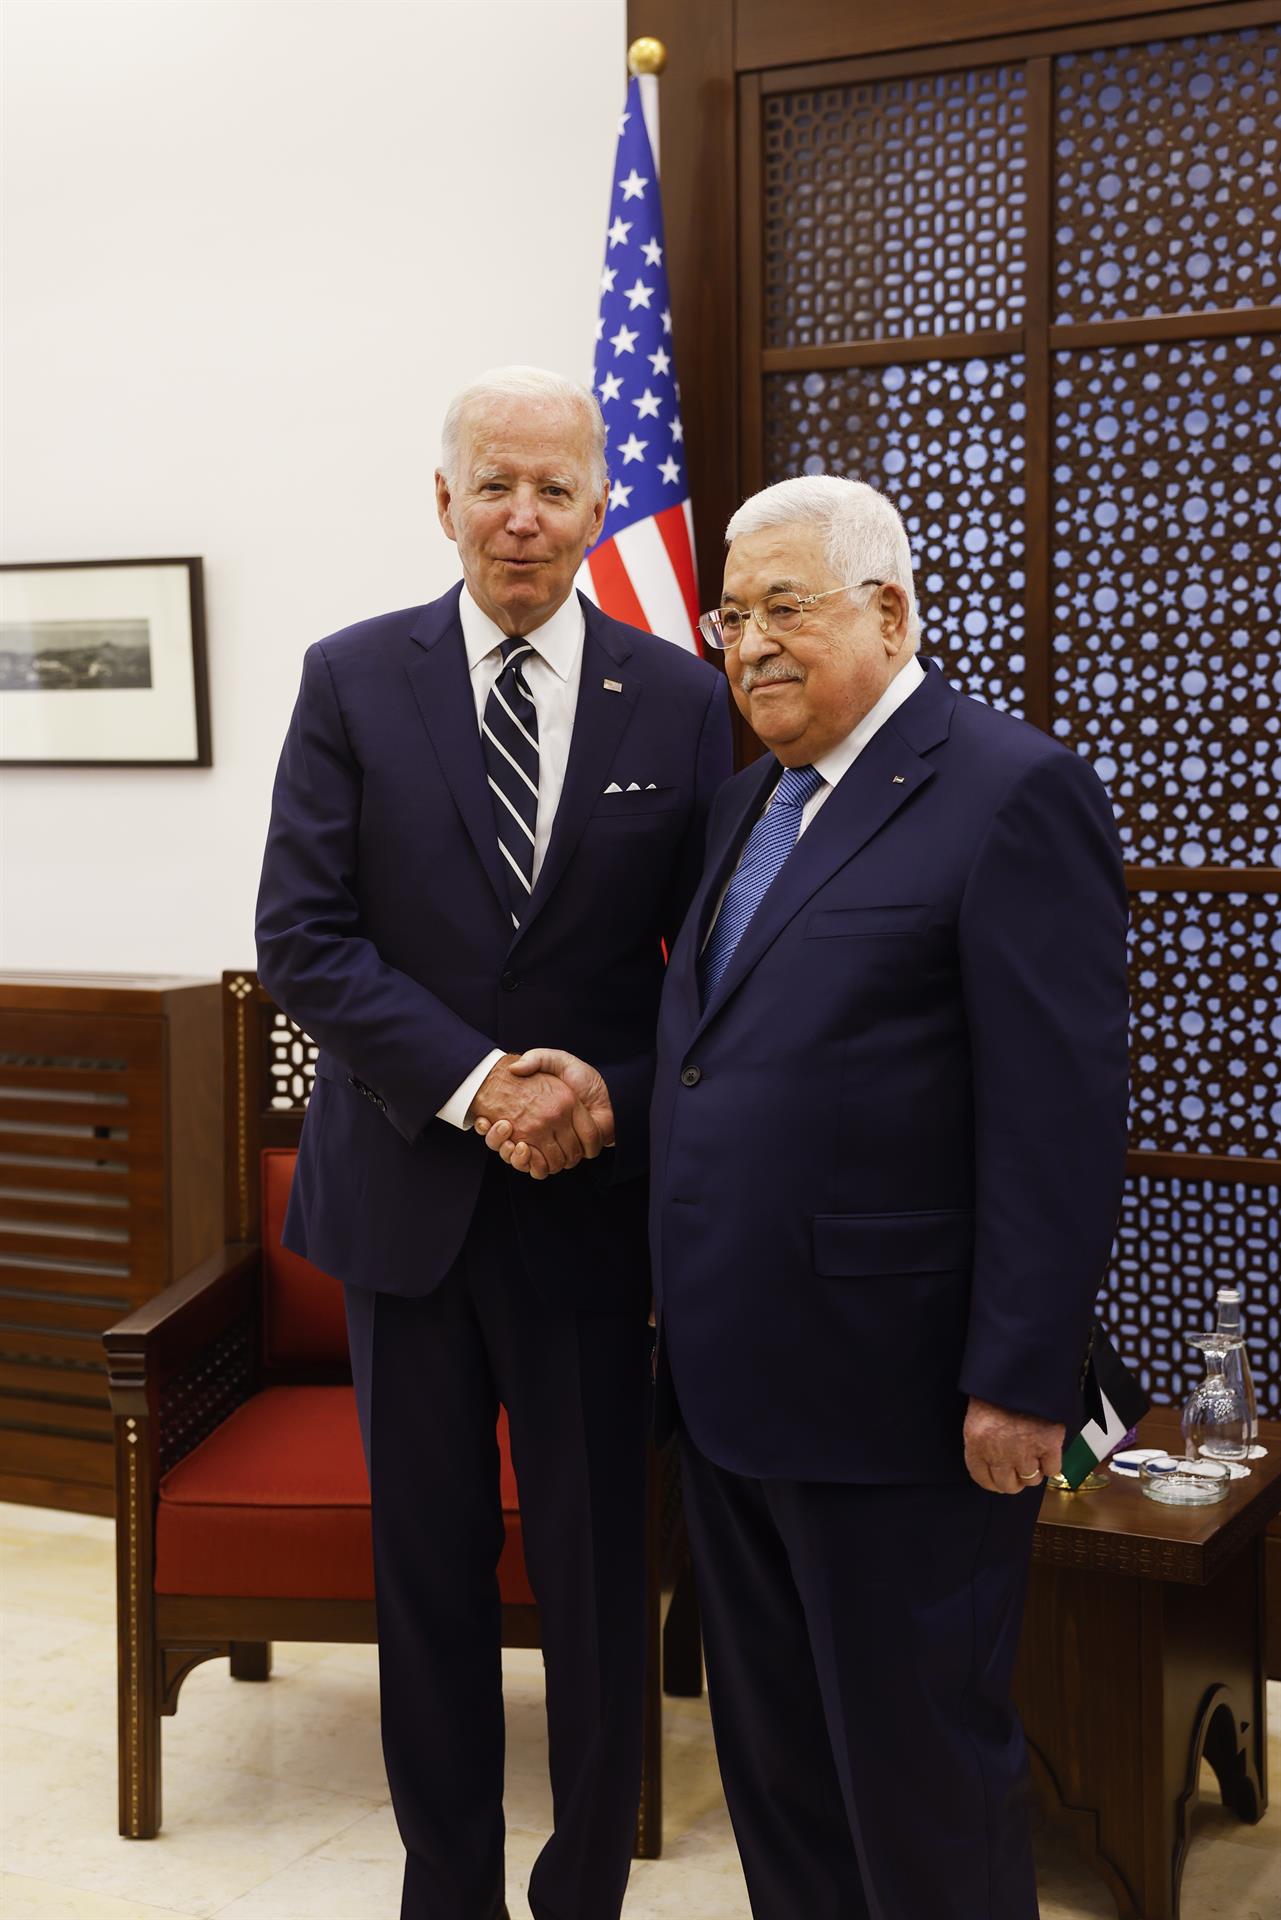 Biden llegó al hospital acompañado por miembros de su delegación y sin autoridades israelíes, lo que según medios locales causó polémica.